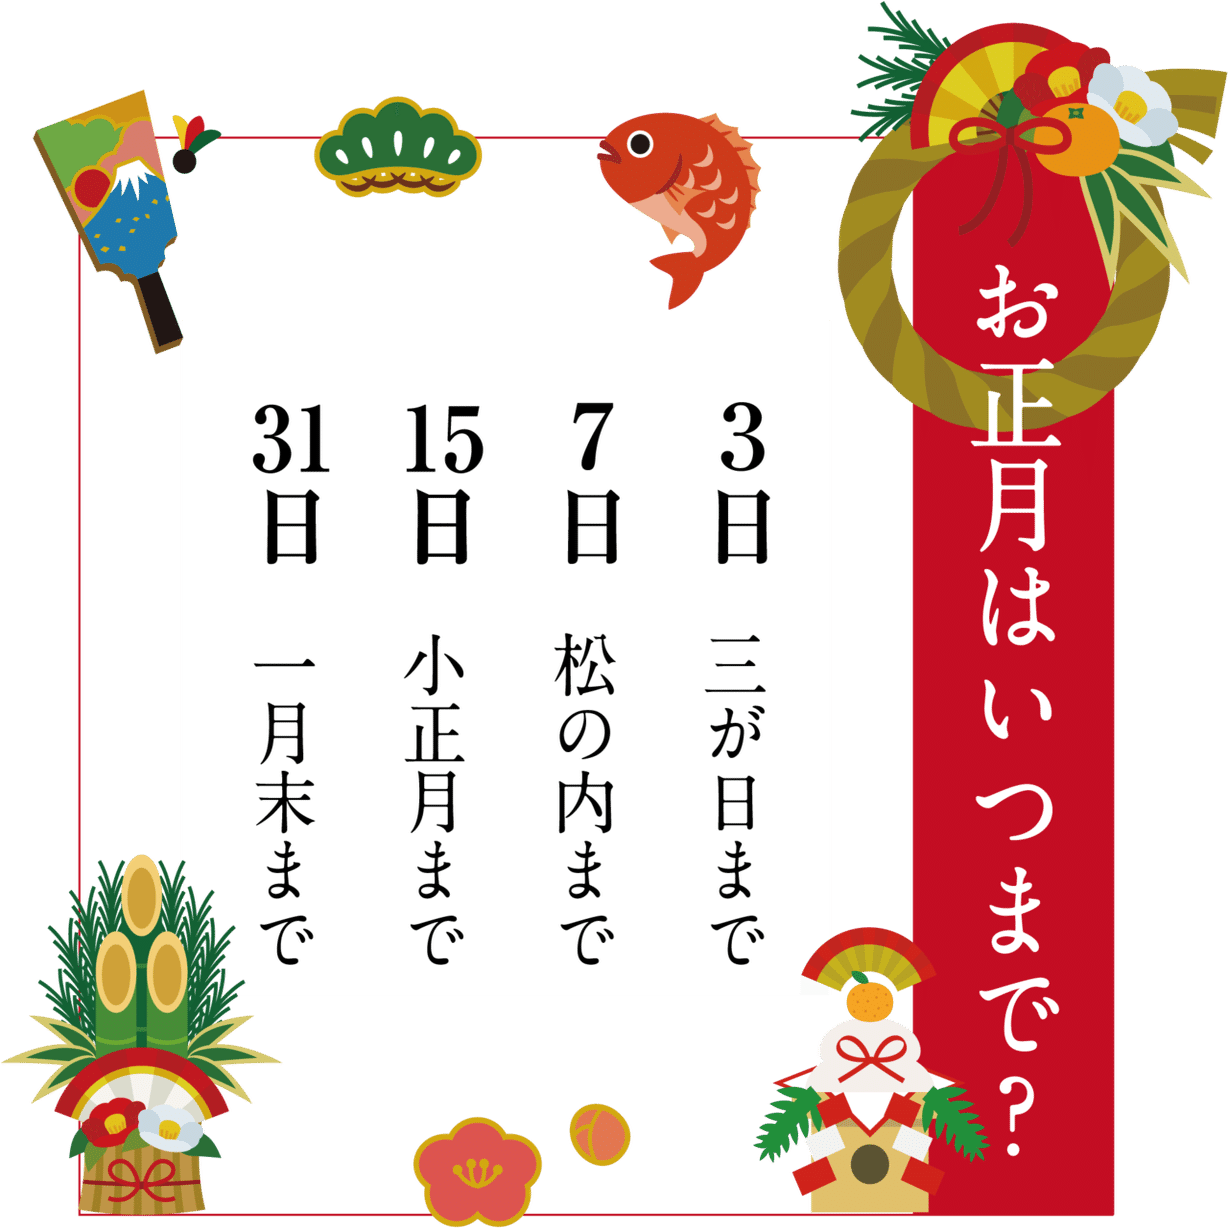 お正月の〆は 七草がゆ で 実は東西で違う 正月期間 小野照崎神社 Note